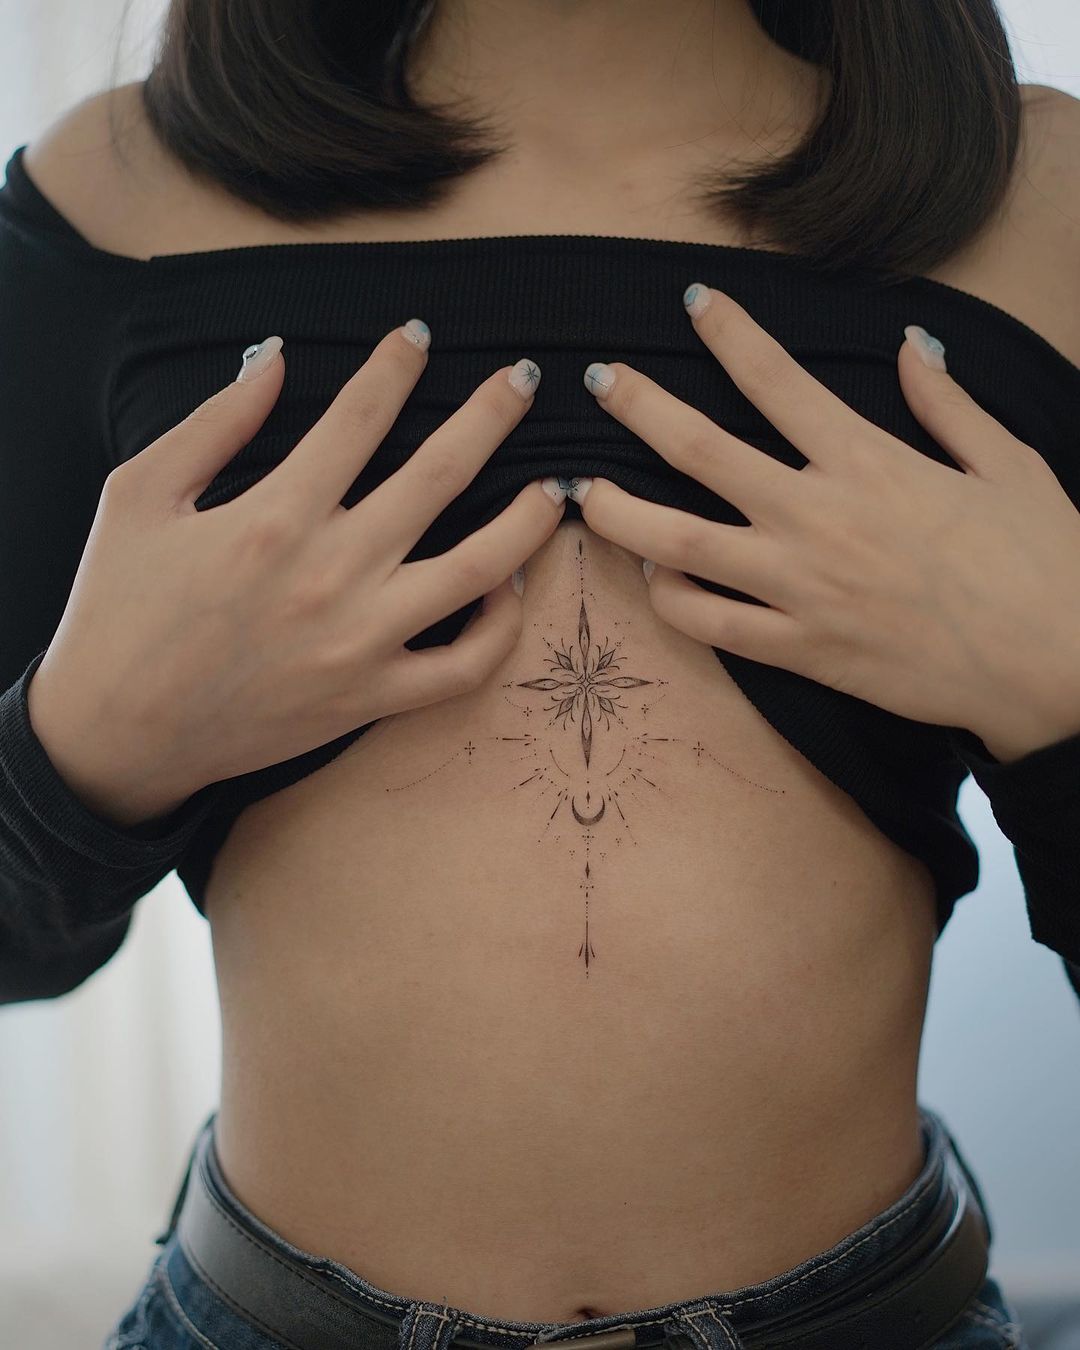 Татуировки на груди: значения, кто и зачем их делает